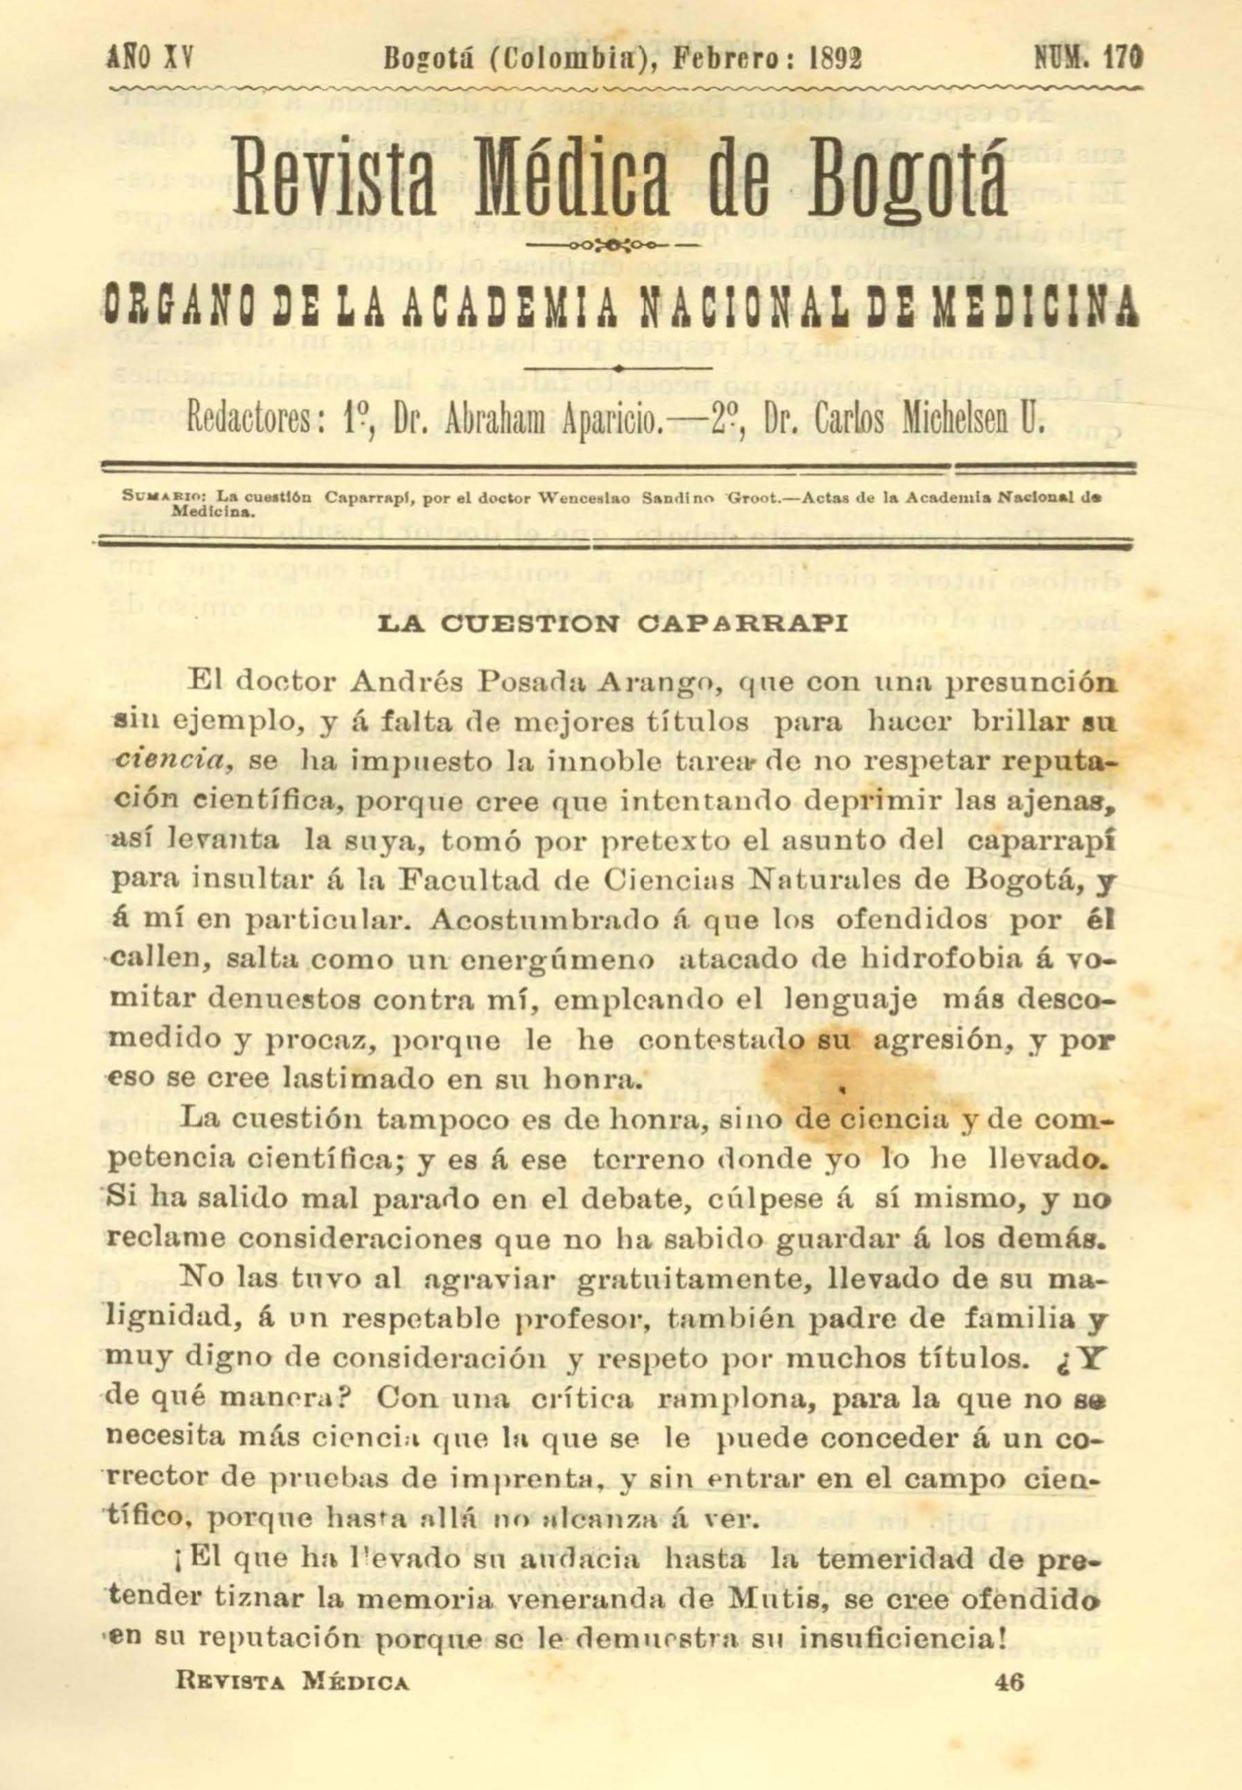 					Ver Vol. 15 Núm. 170 (1892): Revista Médica de Bogotá. Serie 15. Febrero de 1892. Núm. 170
				